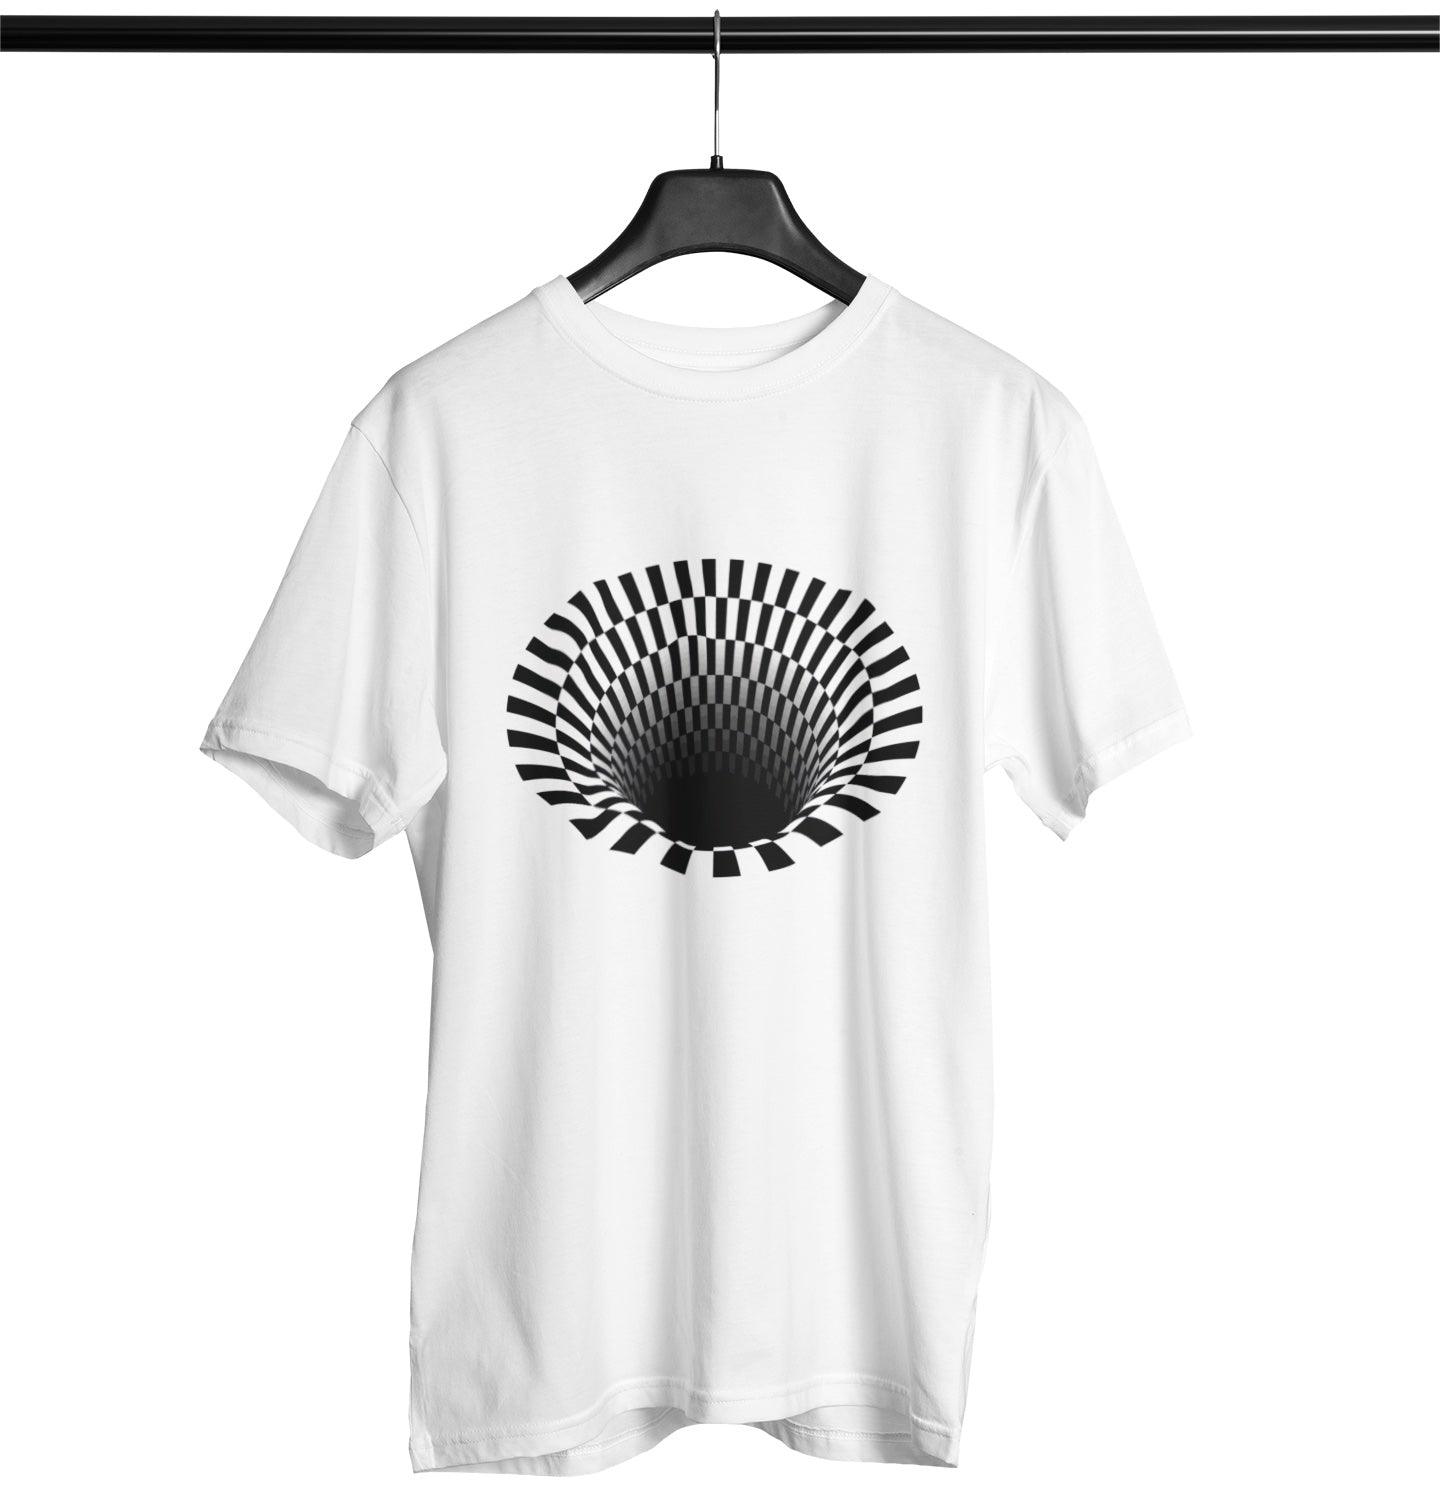 Schwarzes Loch-optische Täuschung Softstyle T-Shirt | Techno Outfit